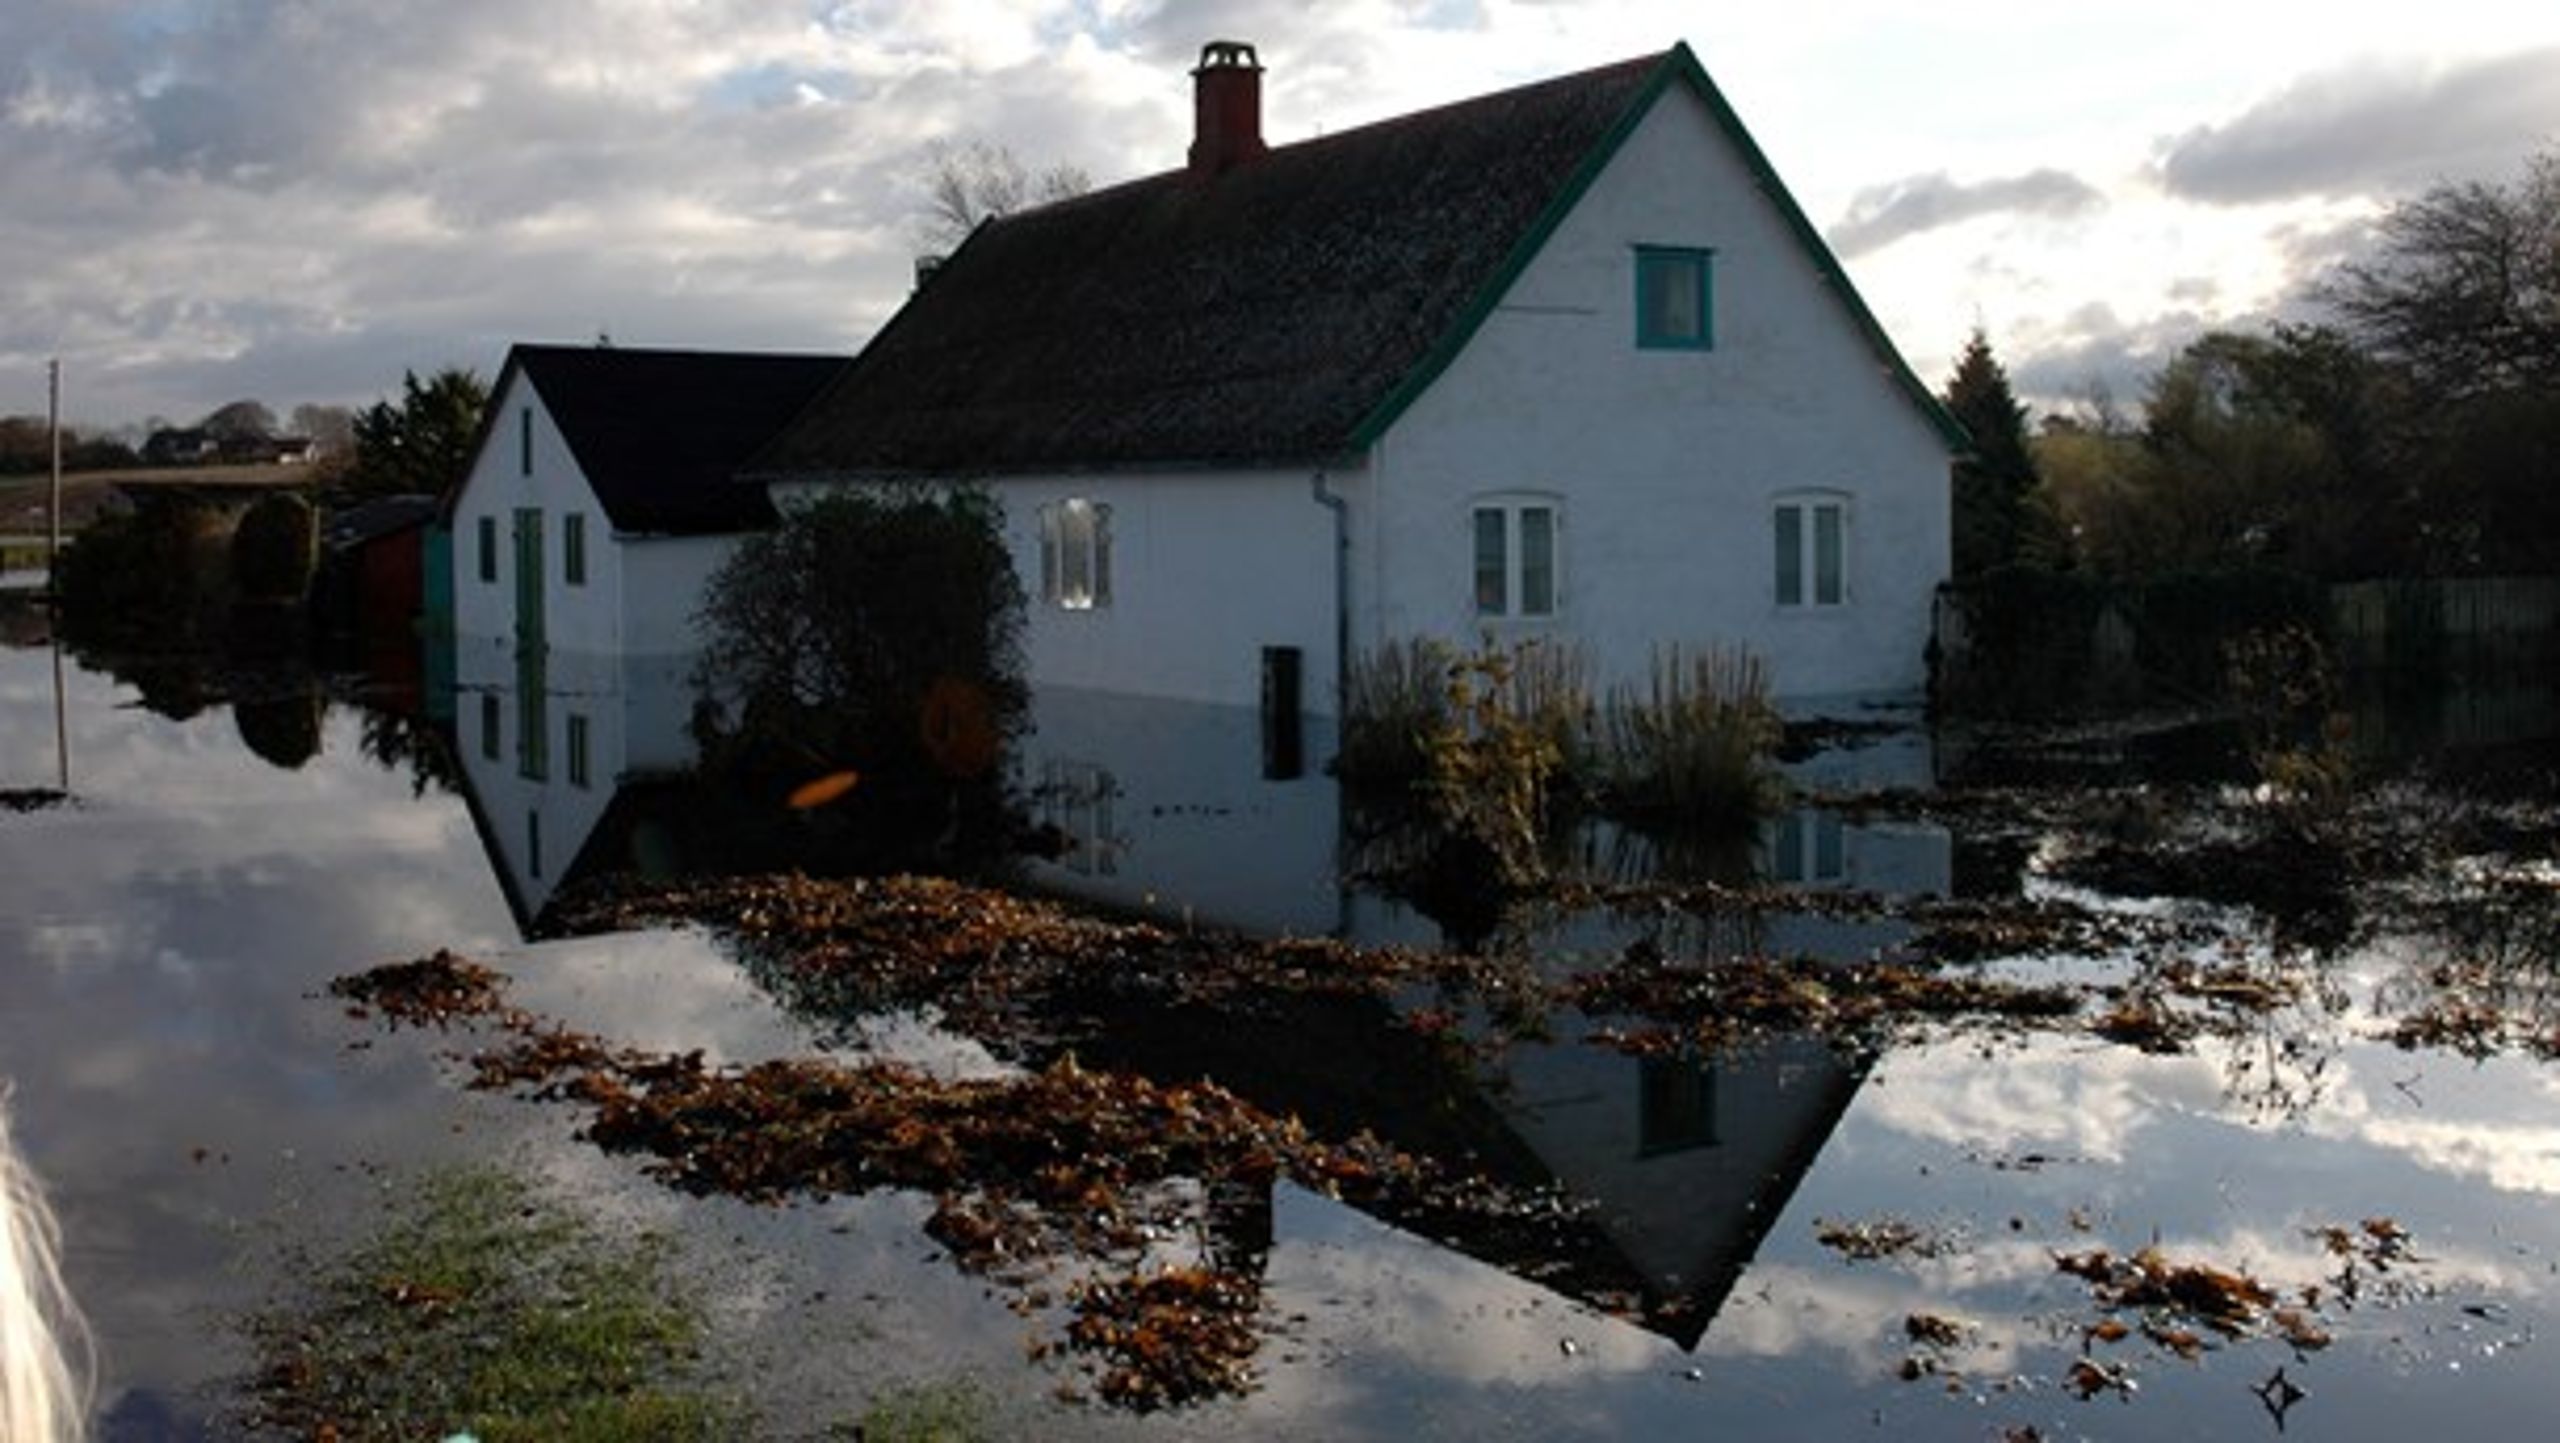 I 2006 blev&nbsp;knap 40 huse på Omø sat under vand ved stormfloden i 2006. I dag er der&nbsp;bygget kystbeskyttelse og højvandssikring efter flere års kamp fra øboernes side, skriver Dorthe Winther.